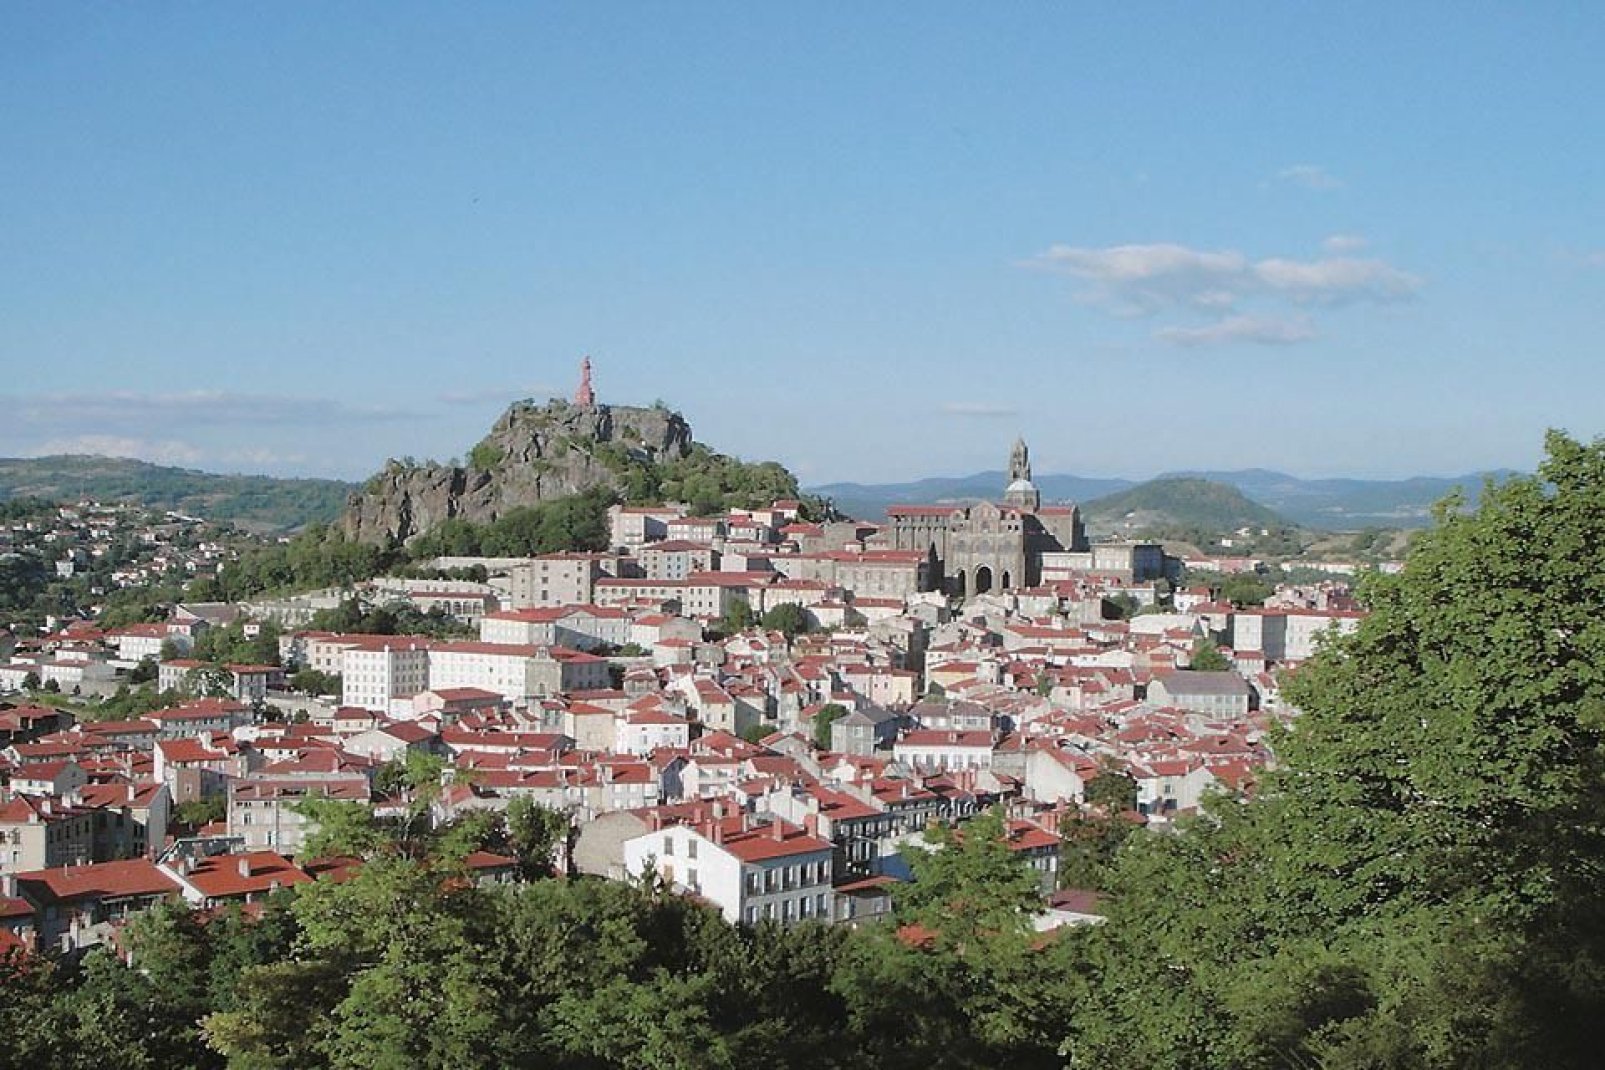 Ancora oggi, la città funge da punto di partenza per numerose escursioni verso San Giacomo di Compostela.